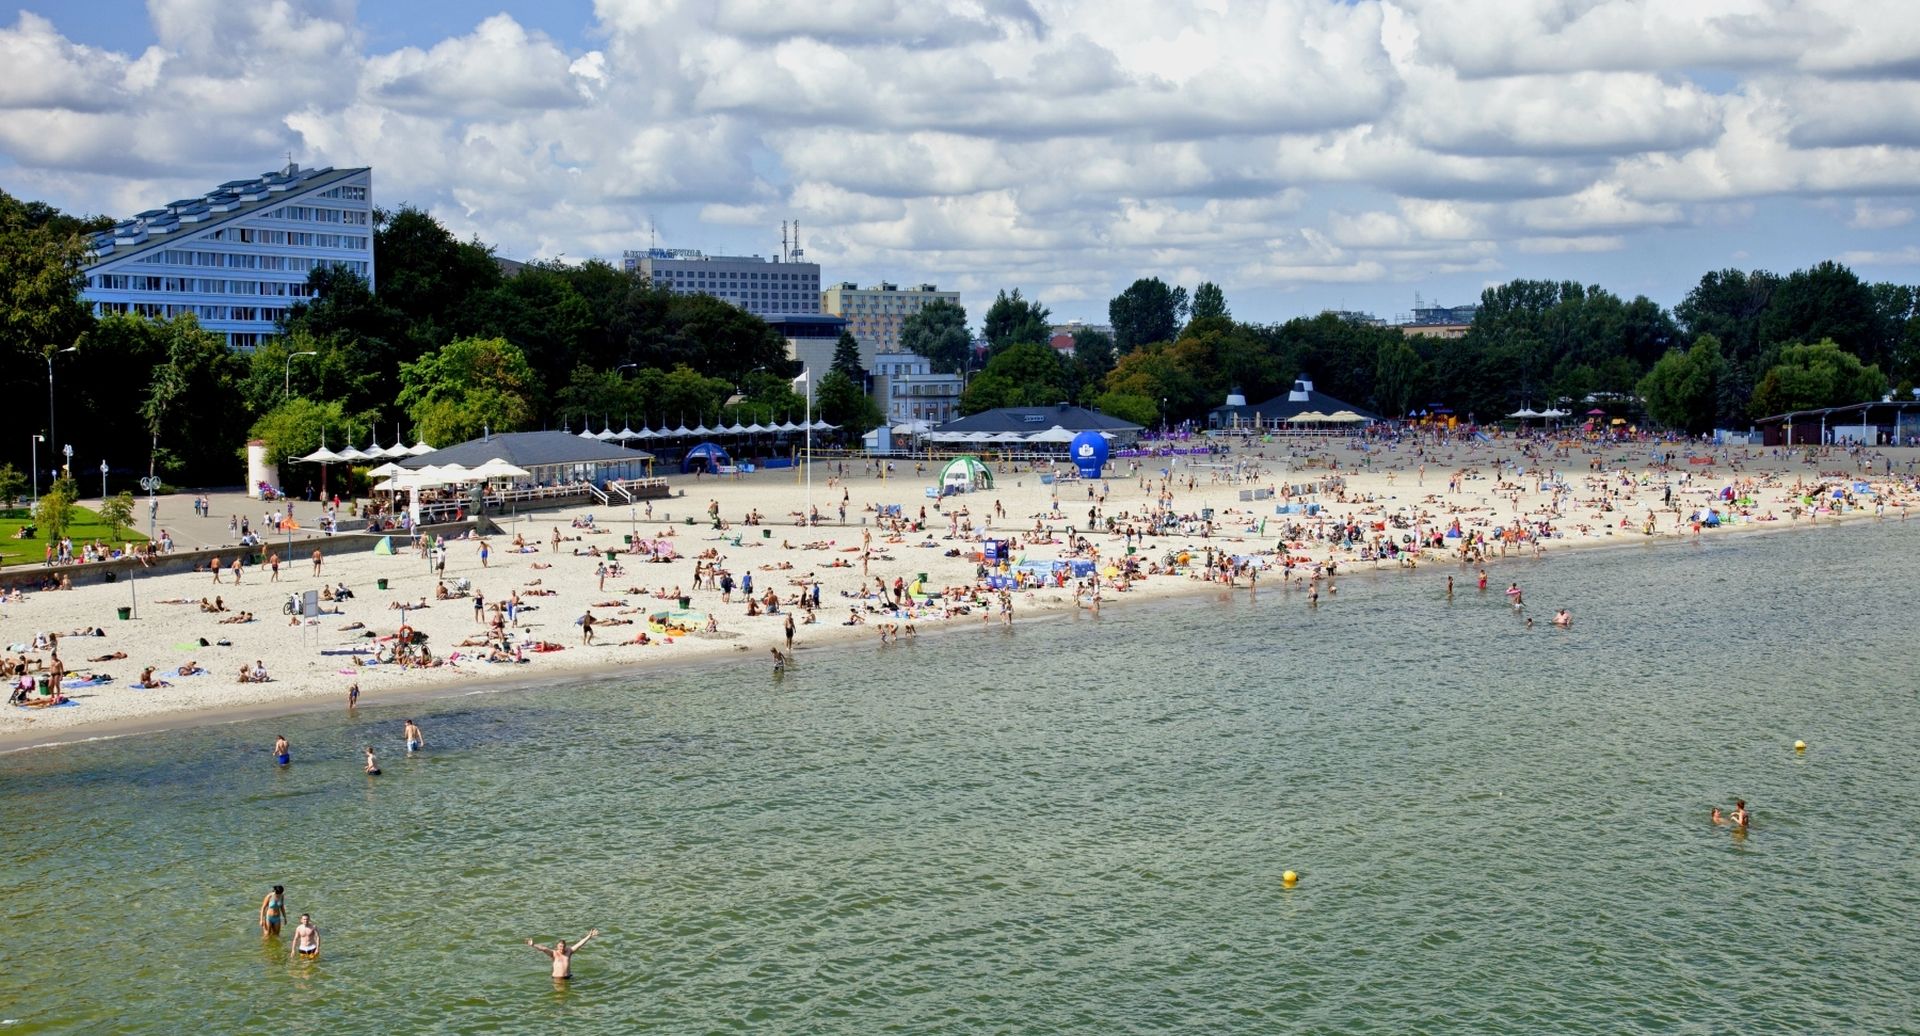 Plaża Gdynia Śródmieście widziana z drona 